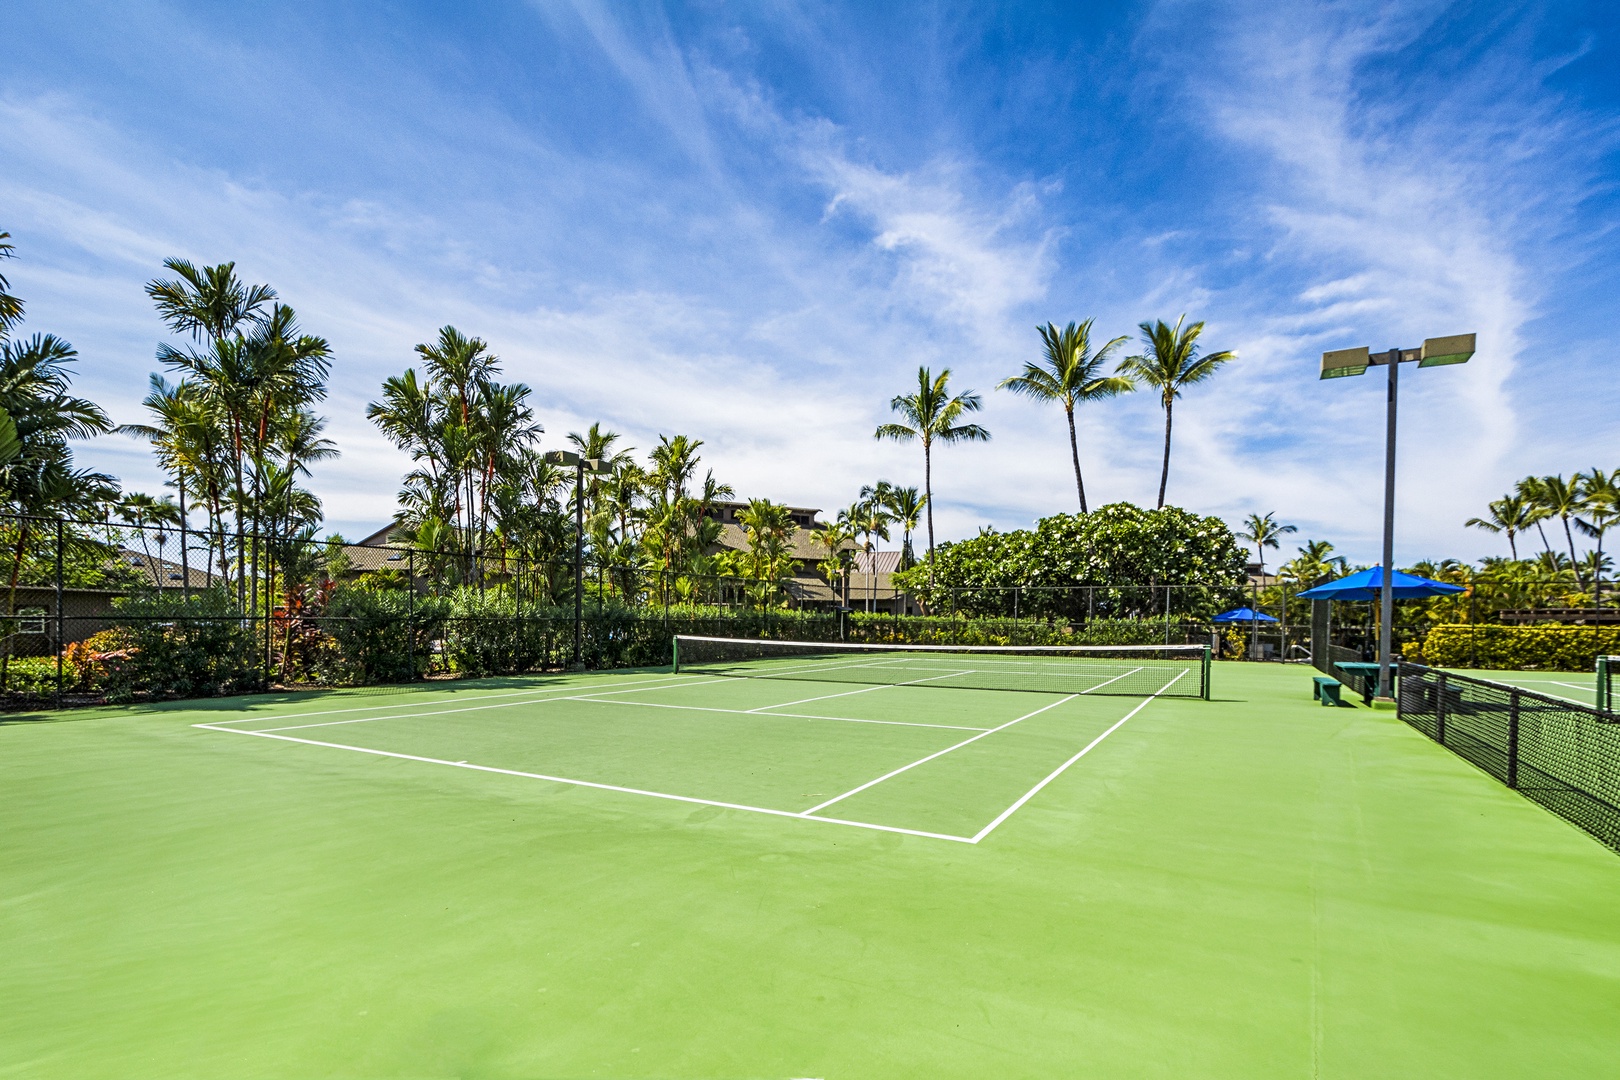 Kailua Kona Vacation Rentals, Kanaloa at Kona 1606 - Kanaloa at Kona Tennis Court